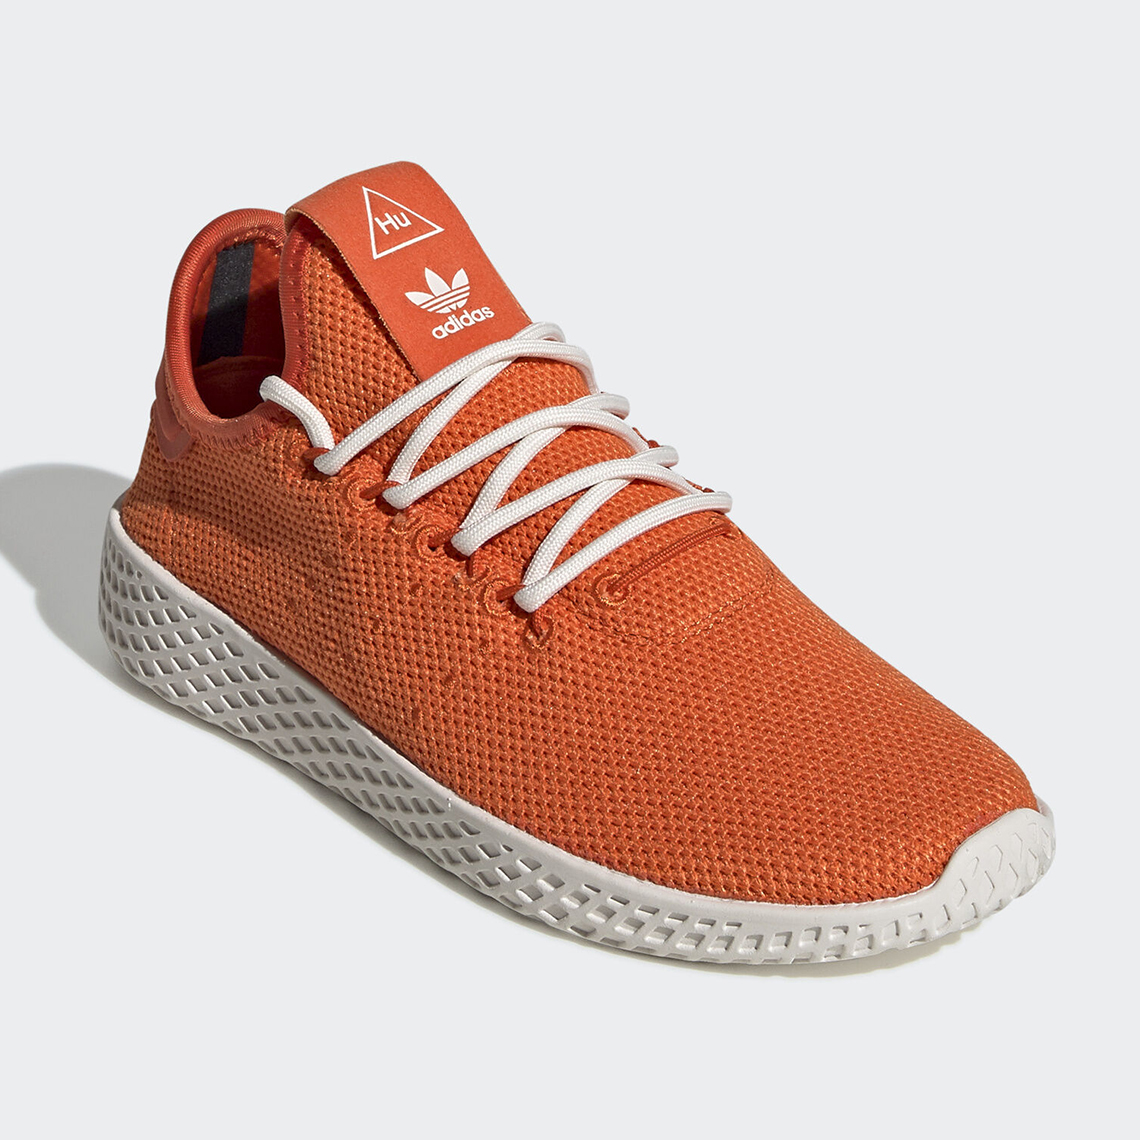 Pharrell Adidas Tennis Hu Orange Fv0053 2